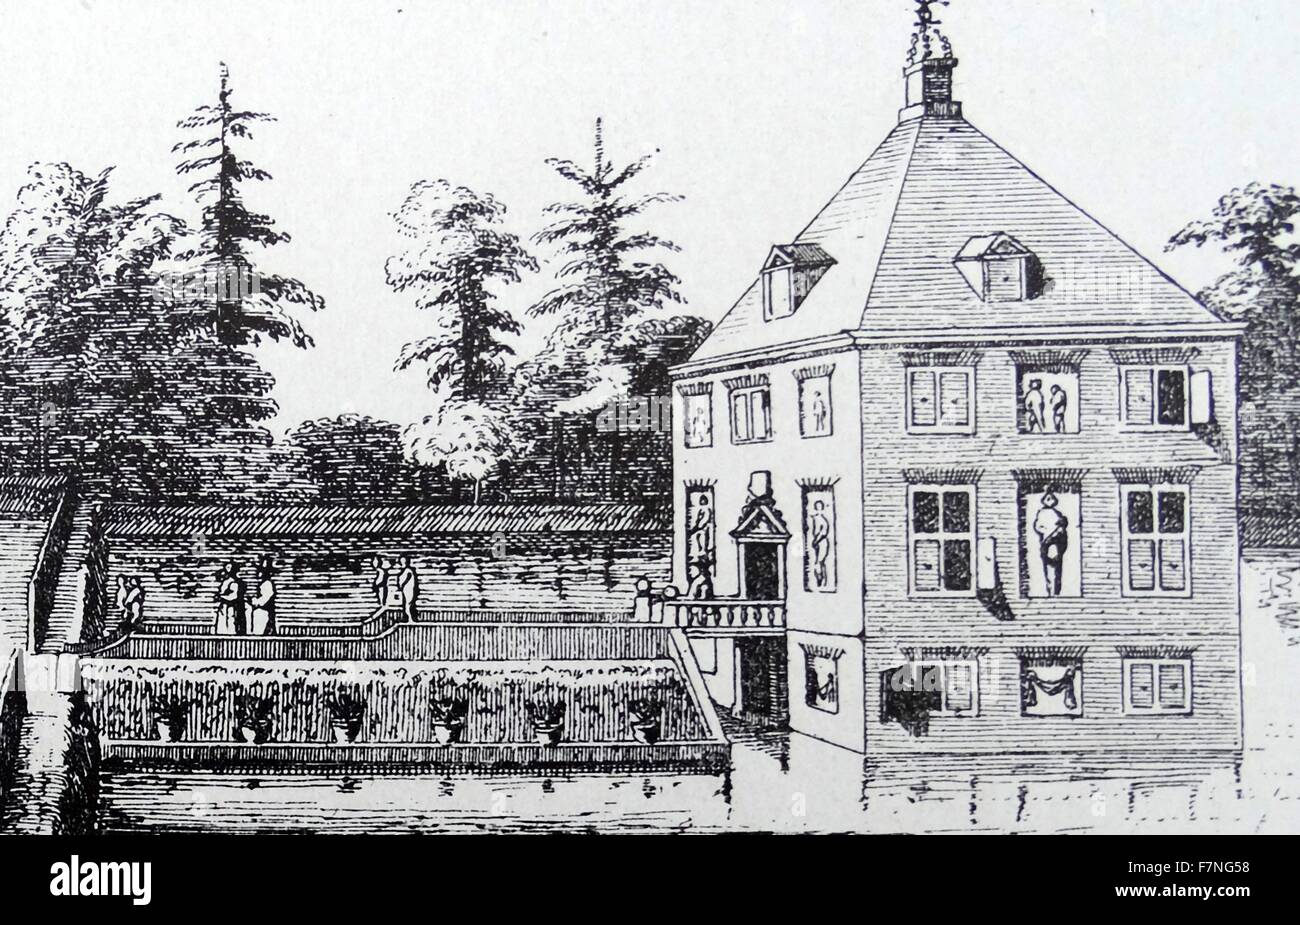 Hofwijk war der Landsitz von Constantijn Huygens (1596-1687).  Wir zeigen den Bau des Hauses und einen Grundriss des Hauses baute Huygens im Jahre 1641 auf die Vliet, in der Nähe von den Haag.  Das Haus existiert noch, aber das ganze Umfeld hat sich verändert. Stockfoto